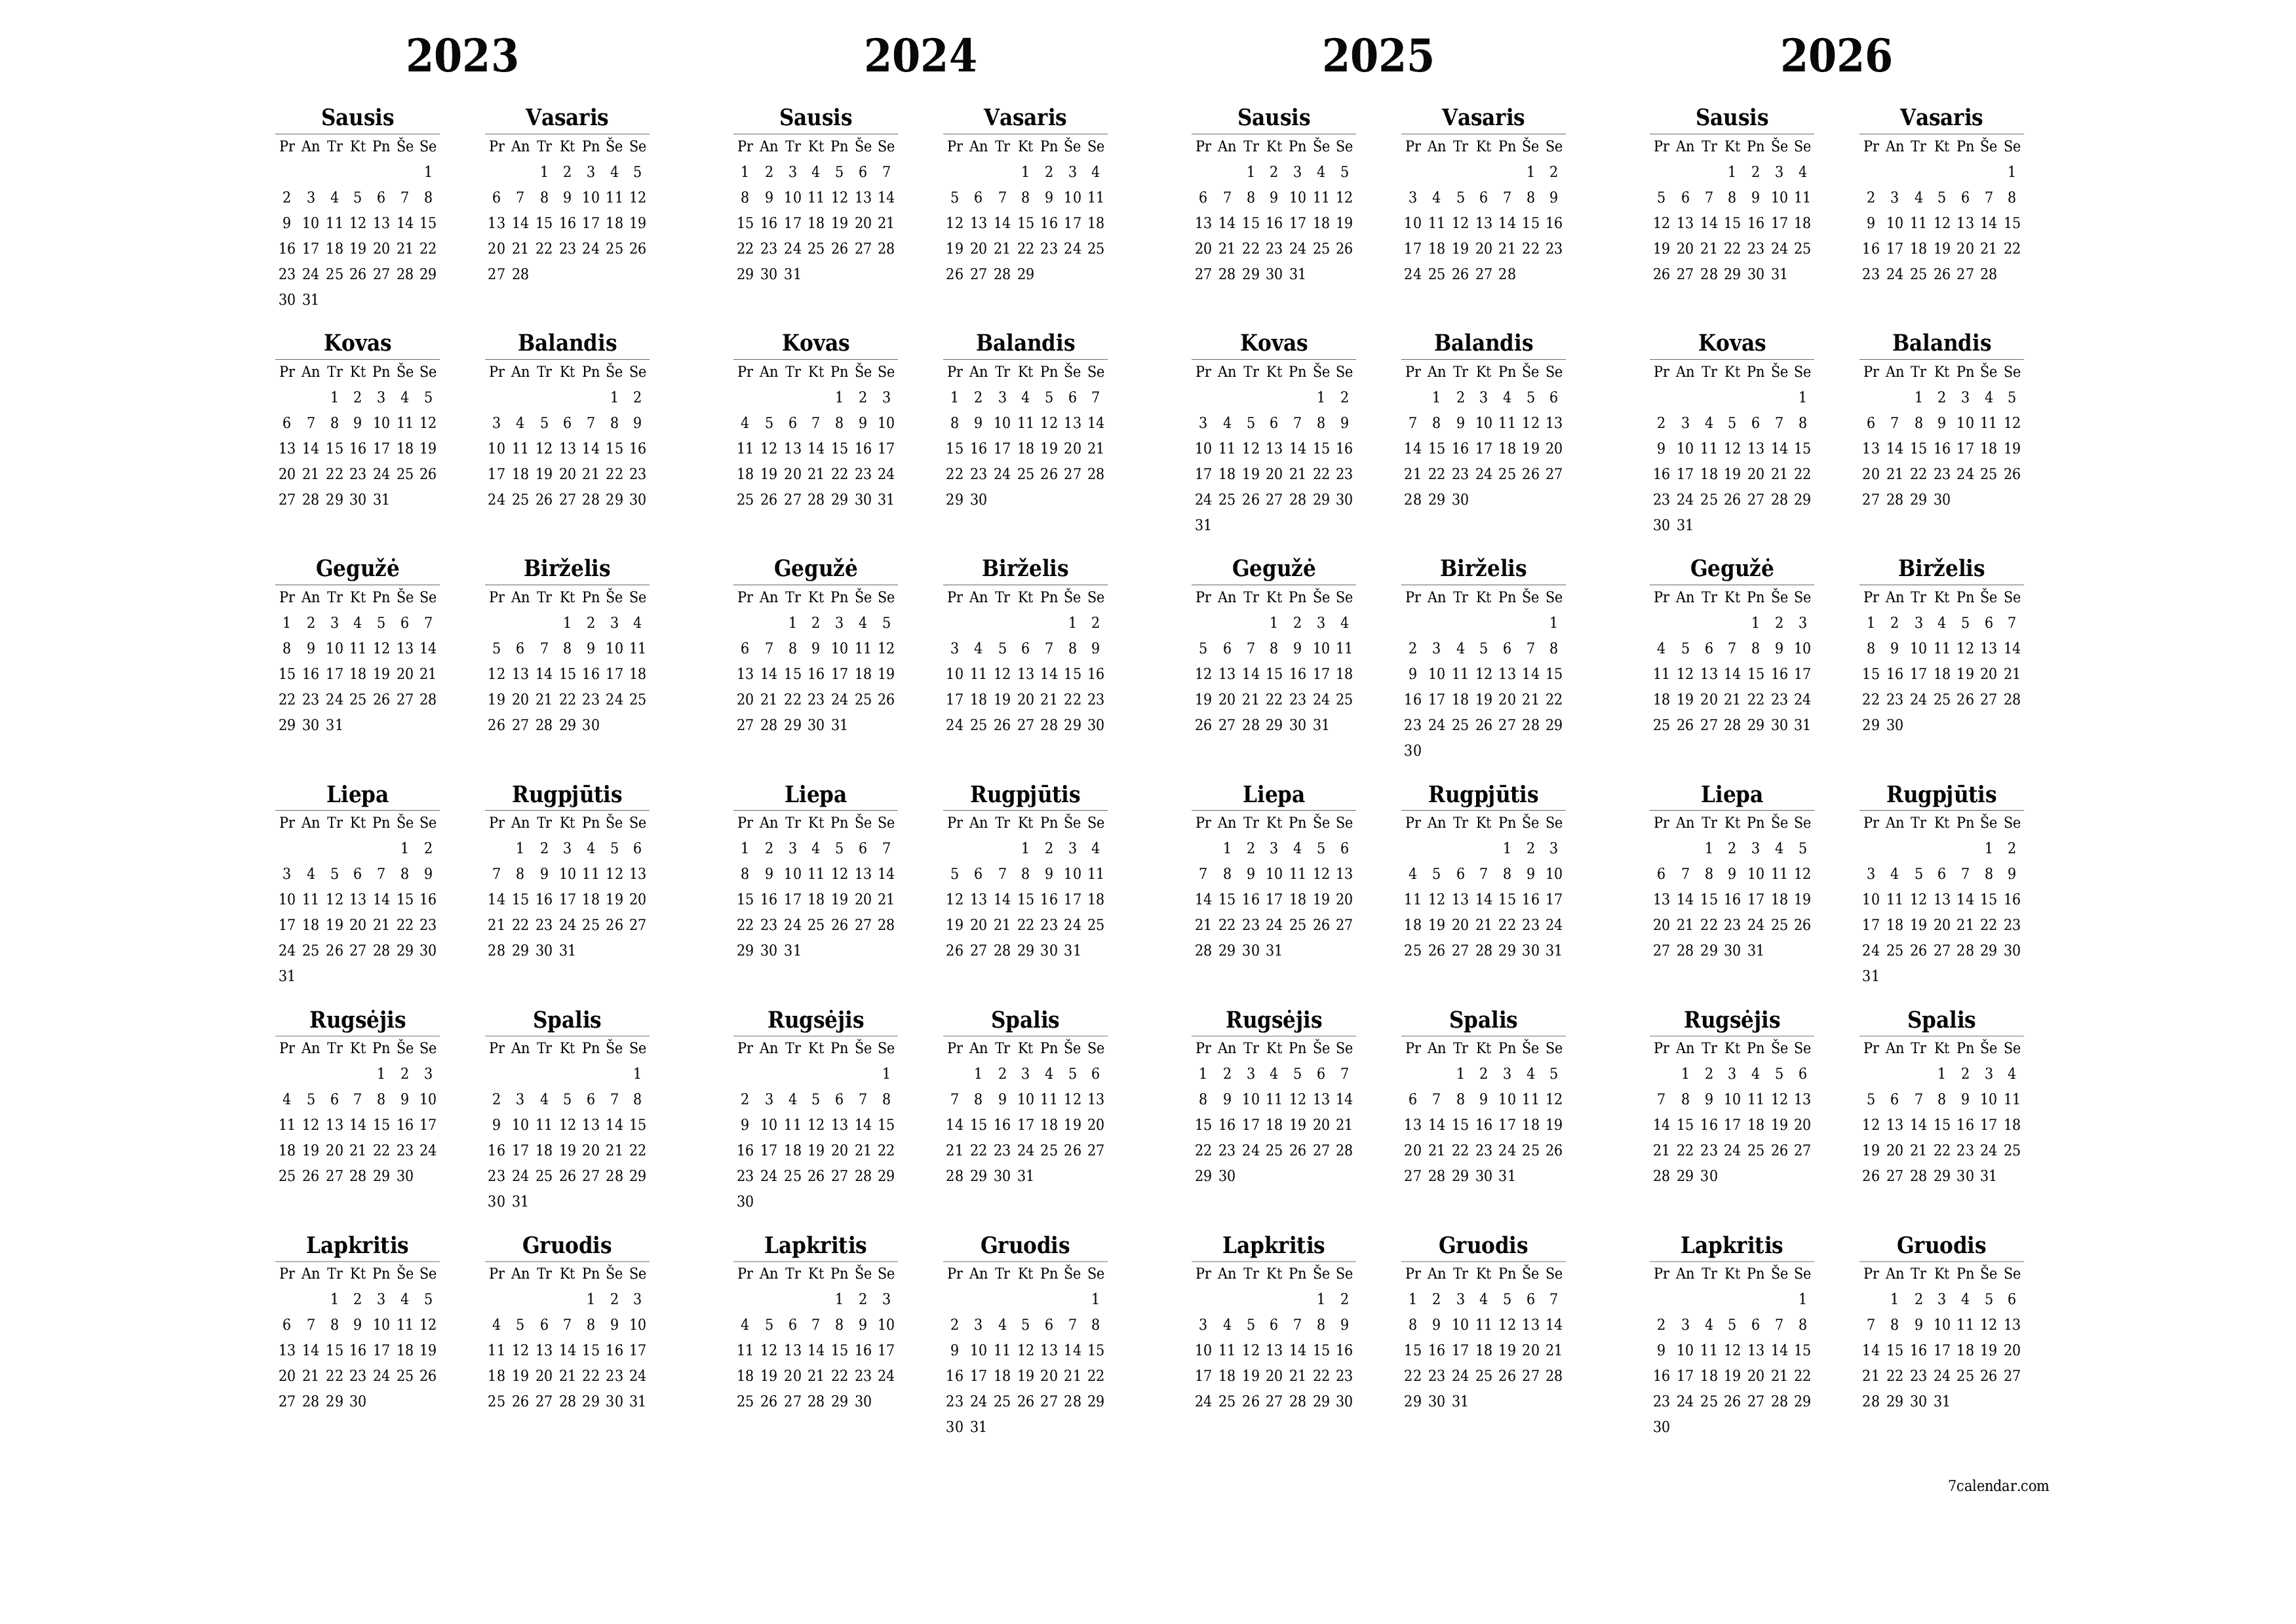 Tuščias metų planavimo kalendorius 2023, 2024, 2025, 2026 su užrašais, išsaugokite ir atsispausdinkite PDF formatu PNG Lithuanian - 7calendar.com